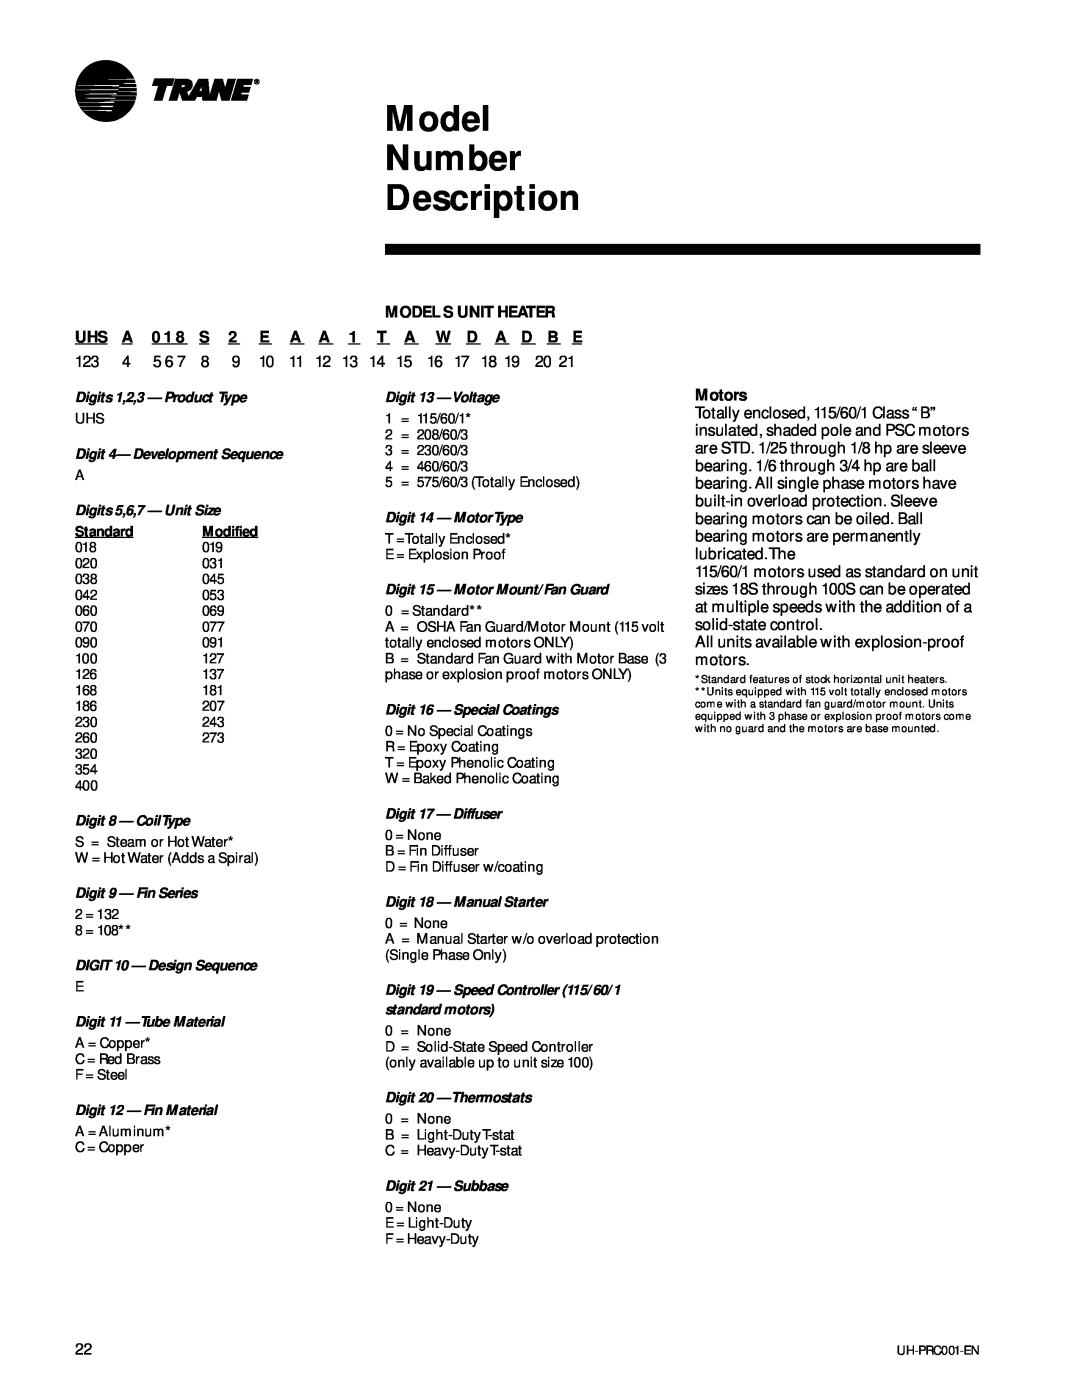 Trane UH-PRC001-EN manual D B E, Model Number Description, Motors 